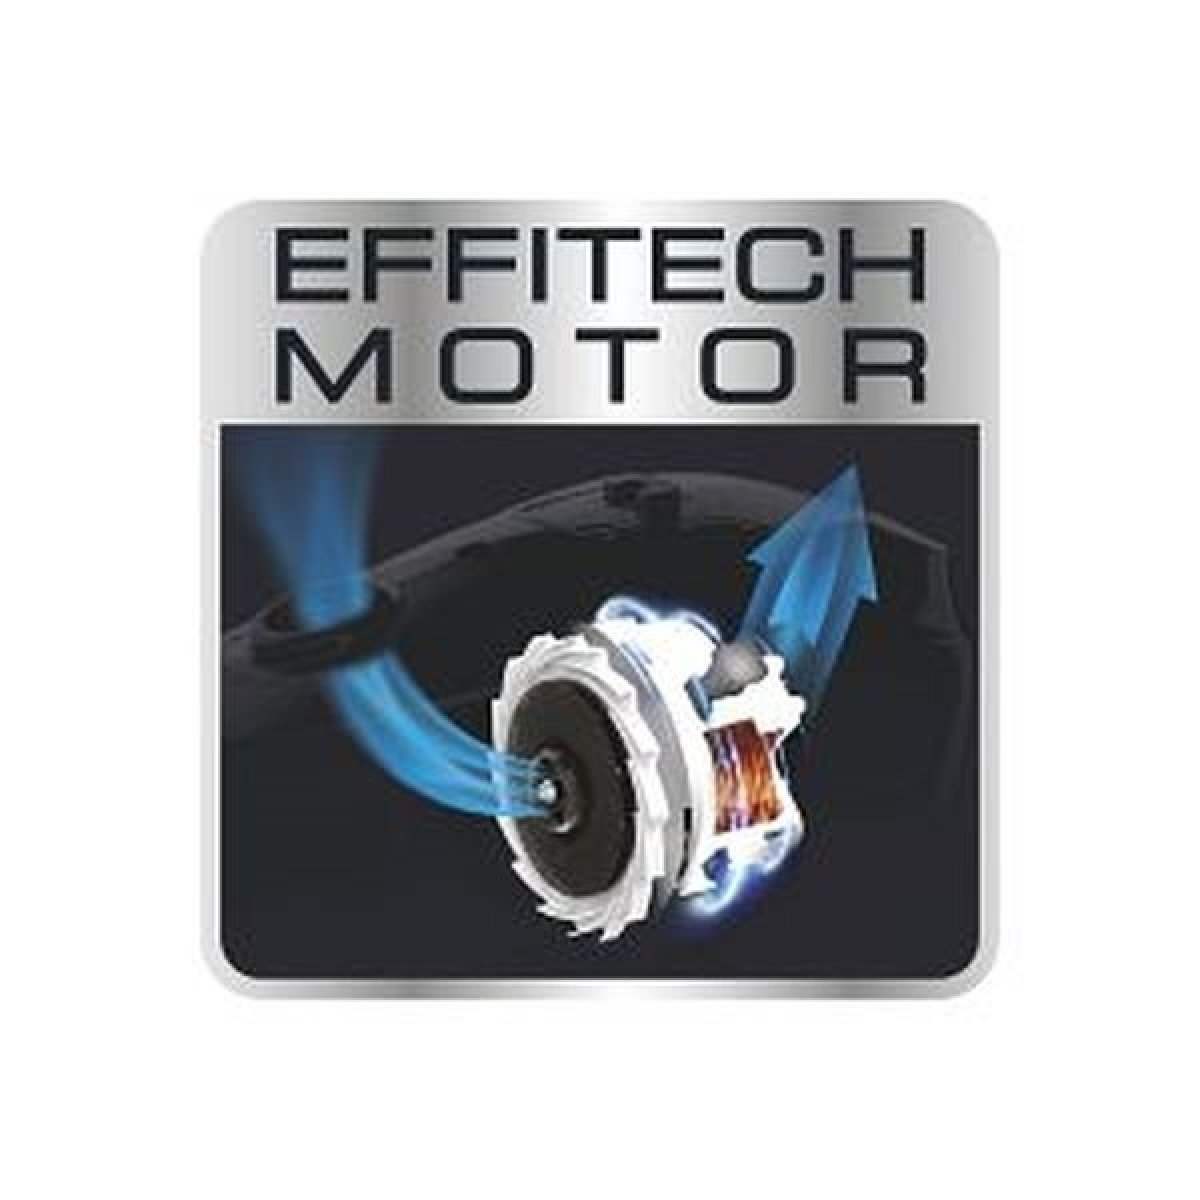 Motor EffiTech pro mimořádnou energetickou účinnost